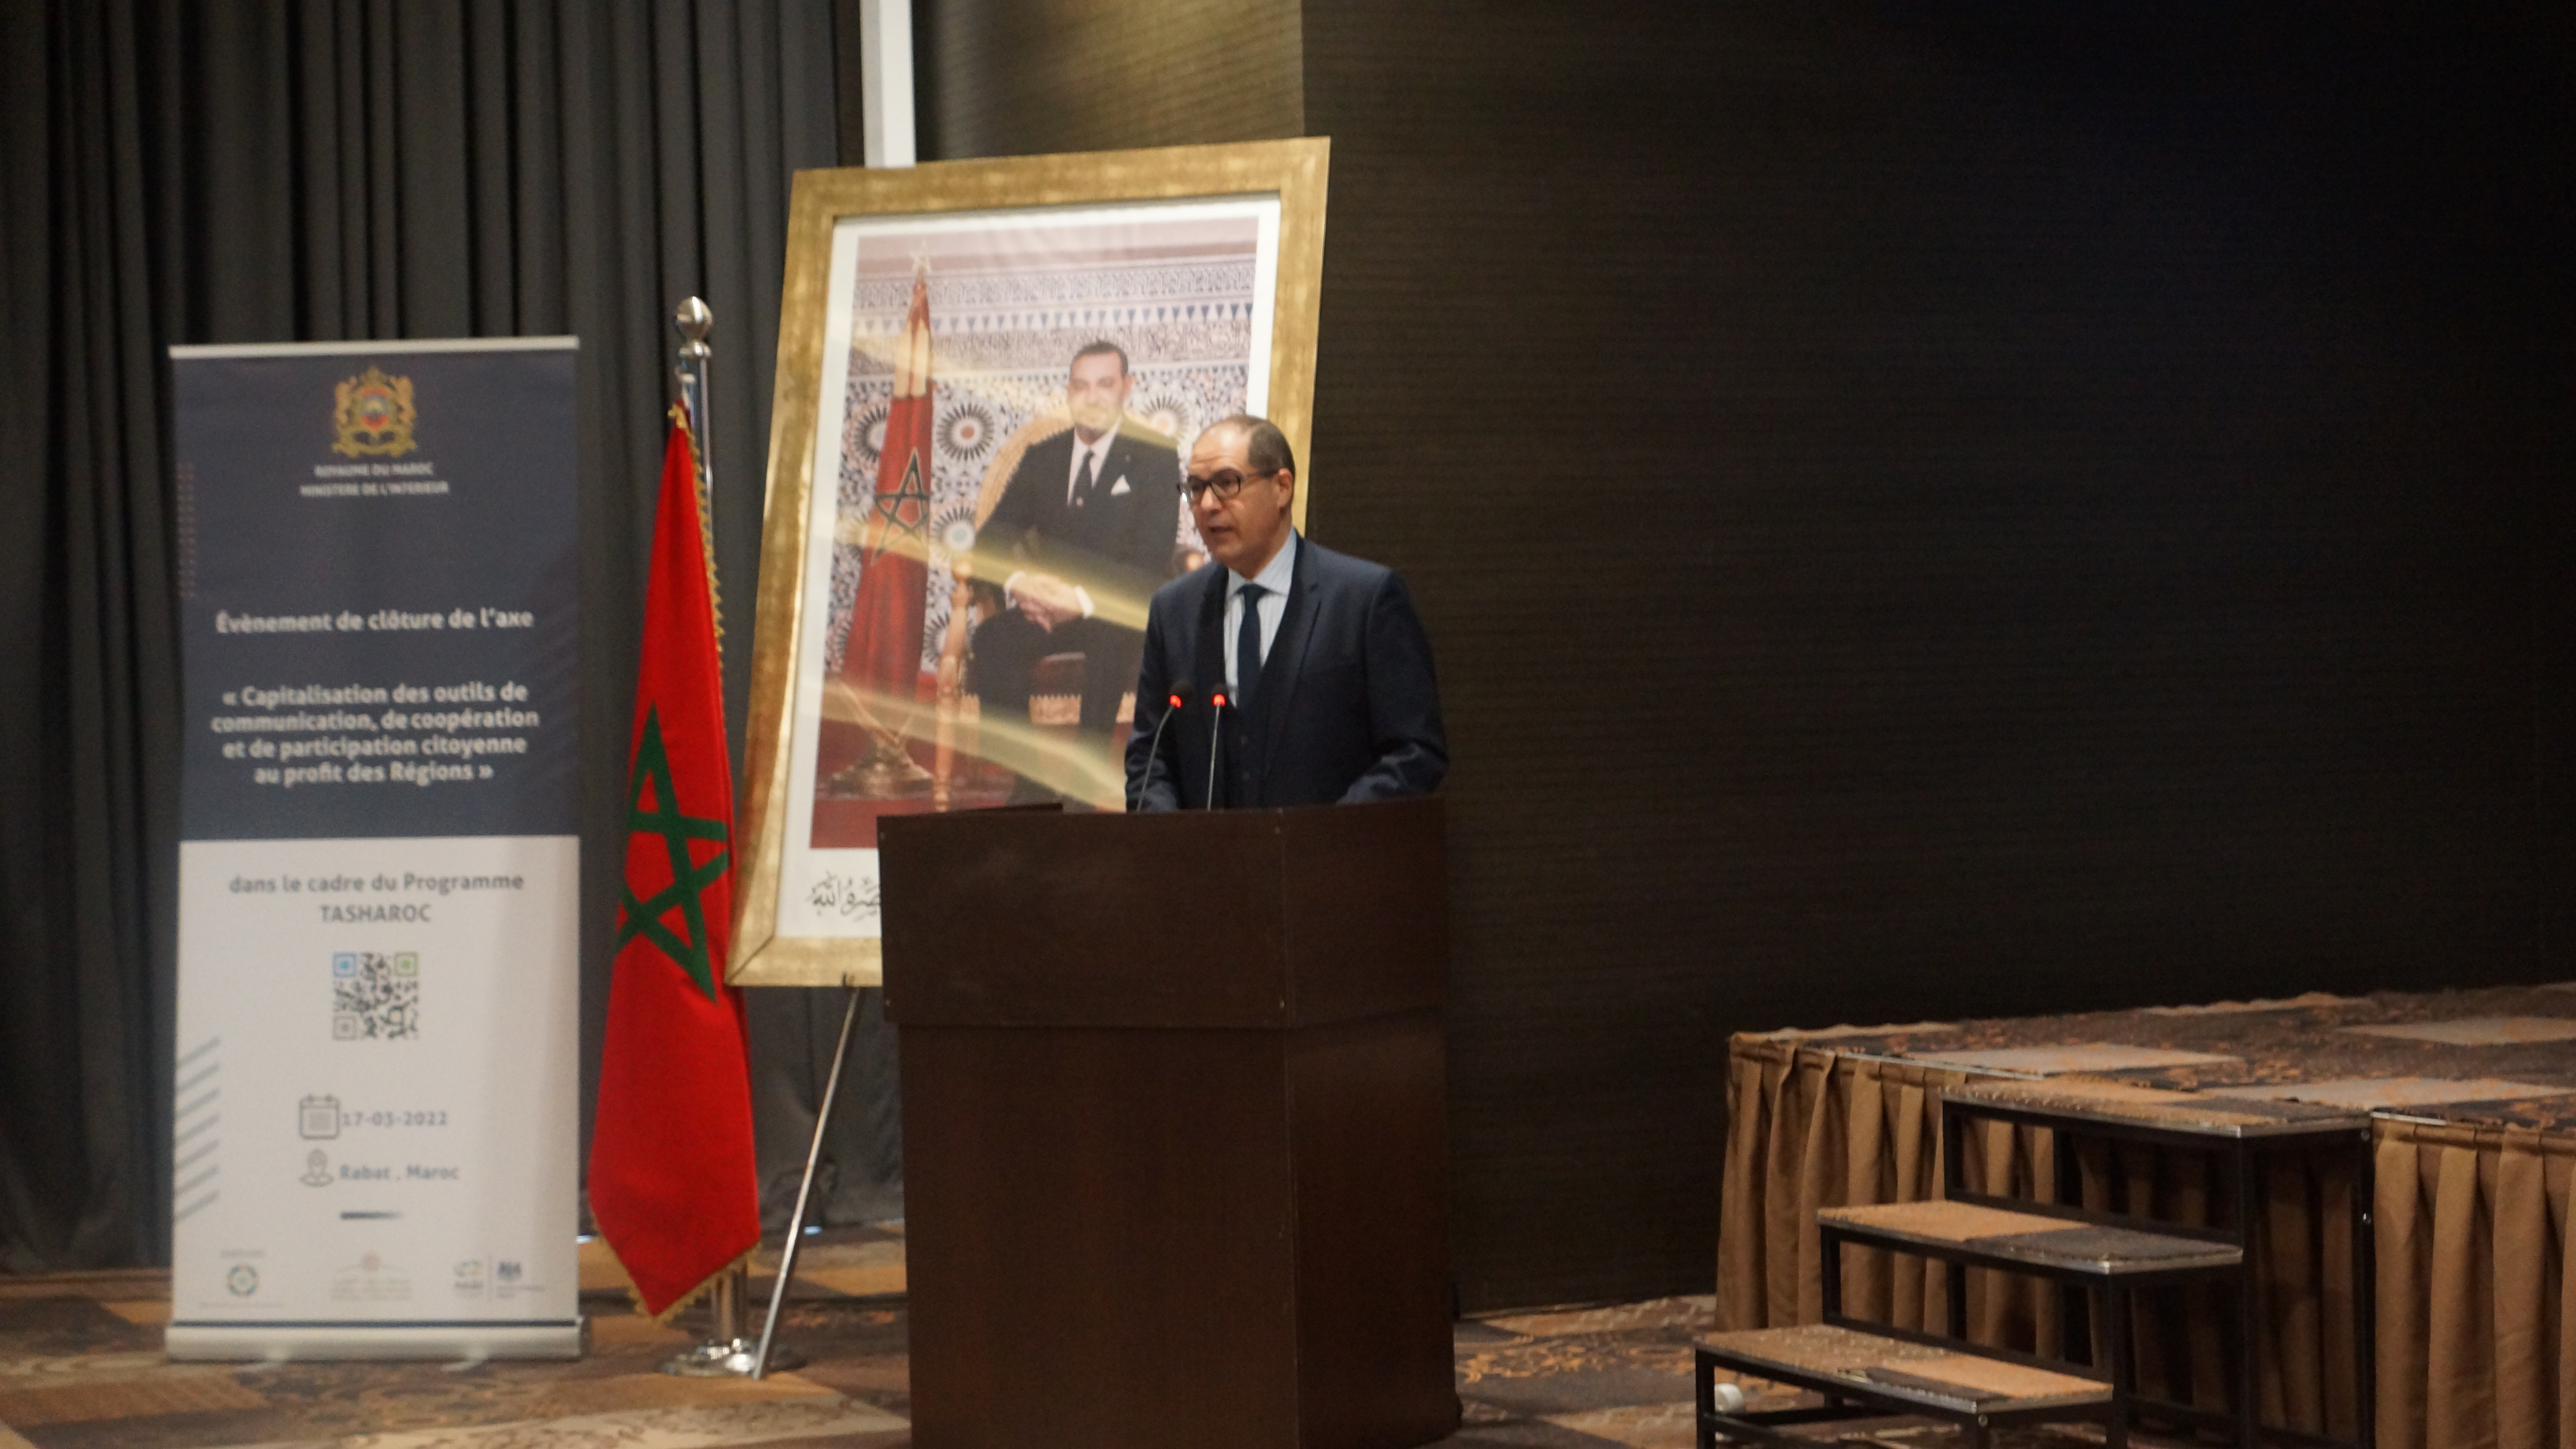 Le Nouveau Modèle de Développement du Maroc consacre la participation citoyenne comme vecteur de transformation de la société